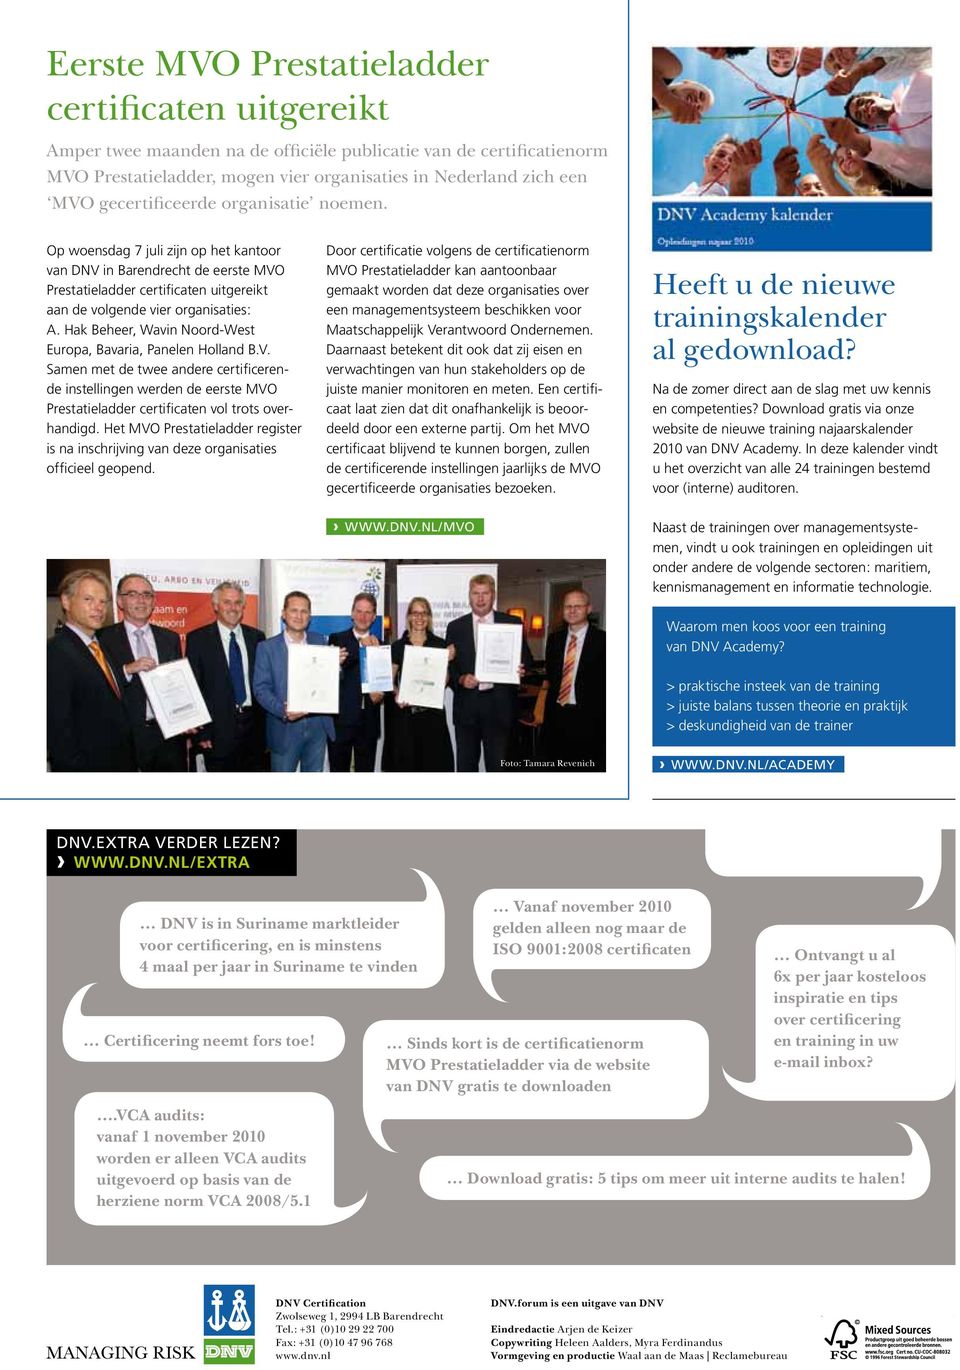 Hak Beheer, Wavin Noord-West Europa, Bavaria, Panelen Holland B.V. Samen met de twee andere certificerende instellingen werden de eerste MVO Prestatieladder certificaten vol trots overhandigd.